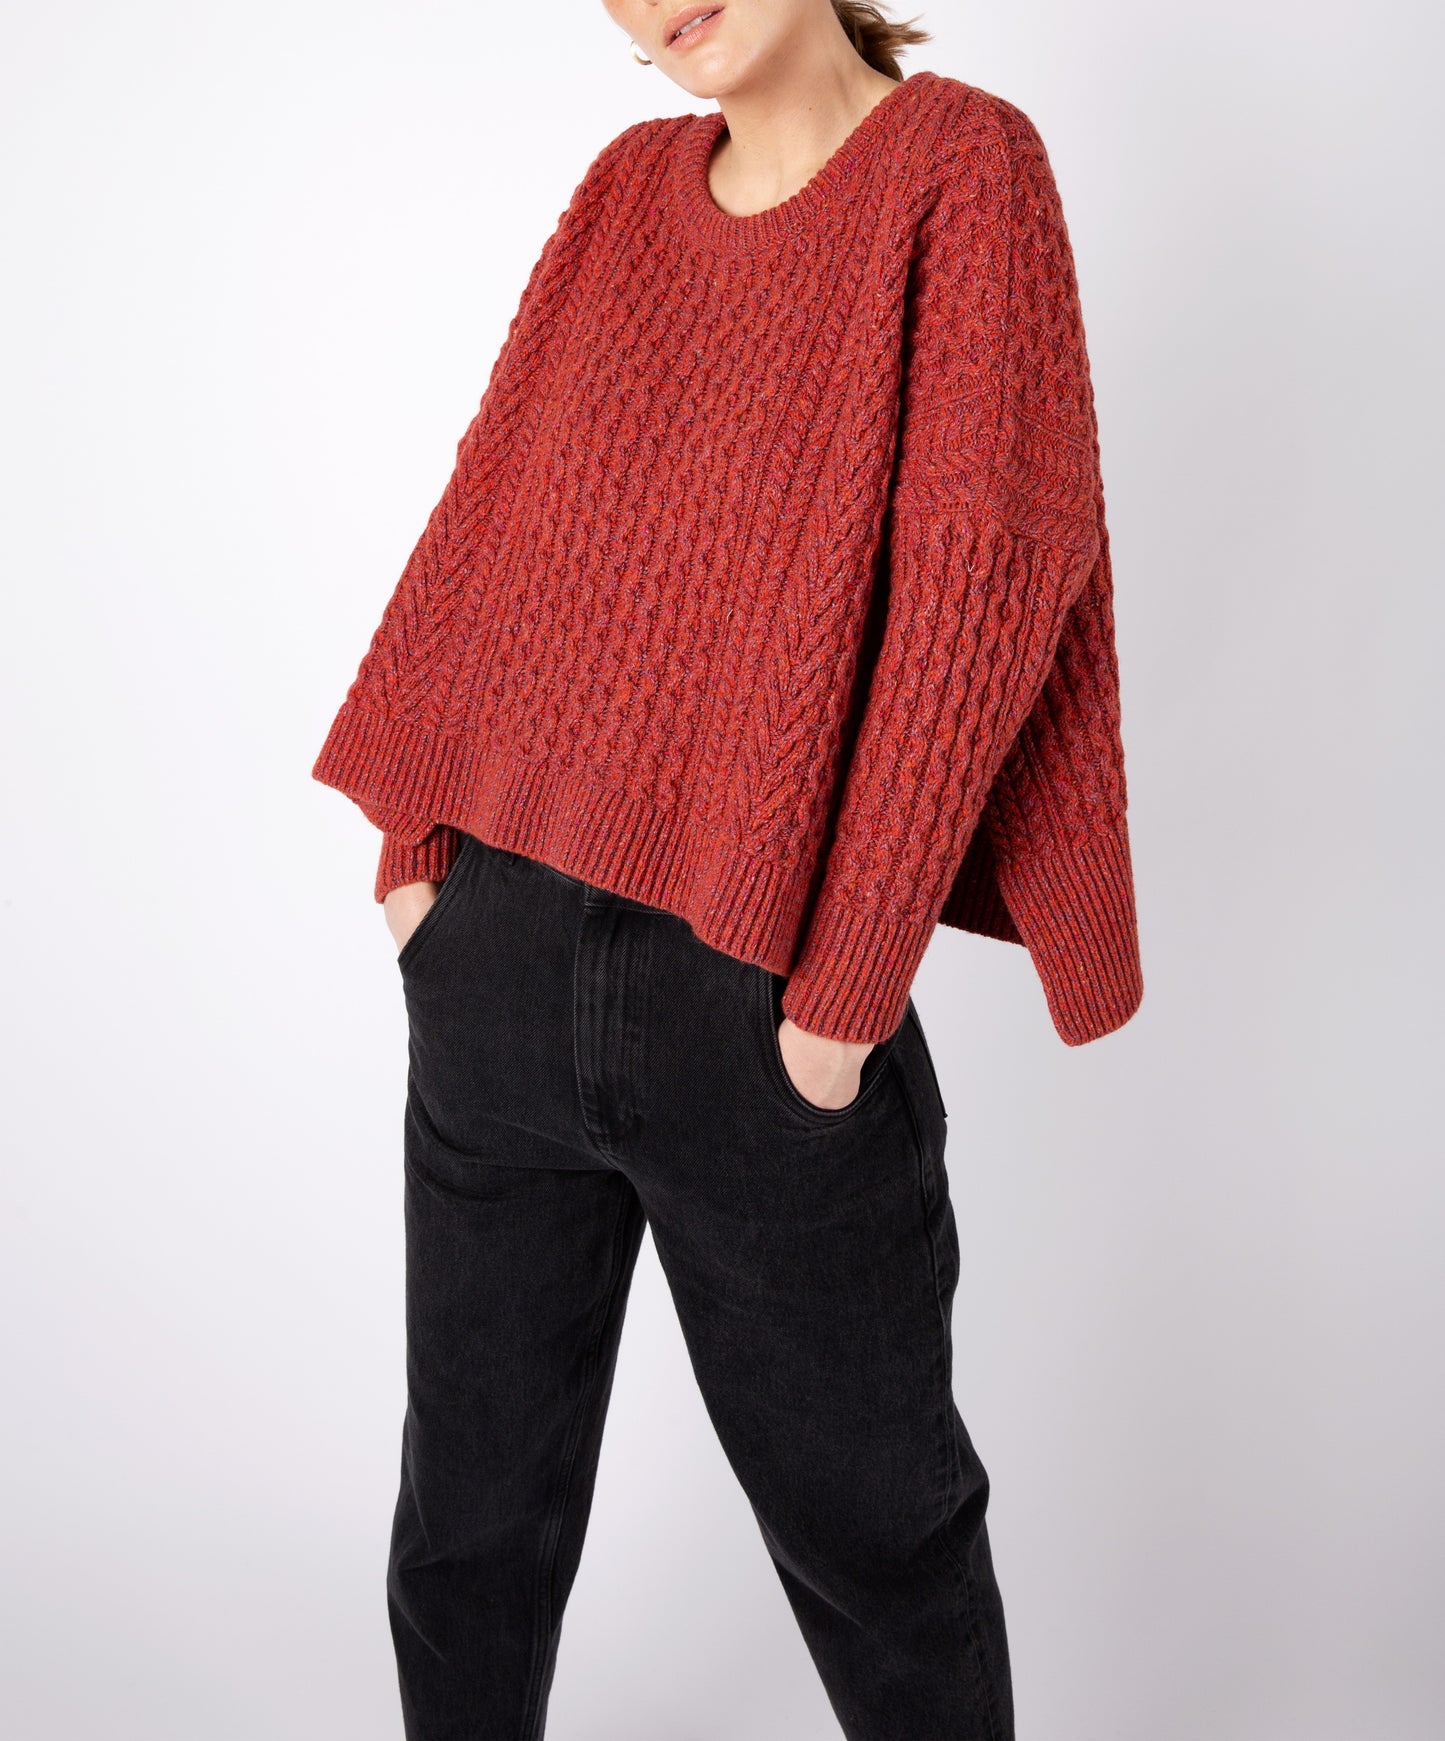 IrelandsEye Knitwear Women's Knitted 'Sorrell' Cropped Aran Sweater Sunset